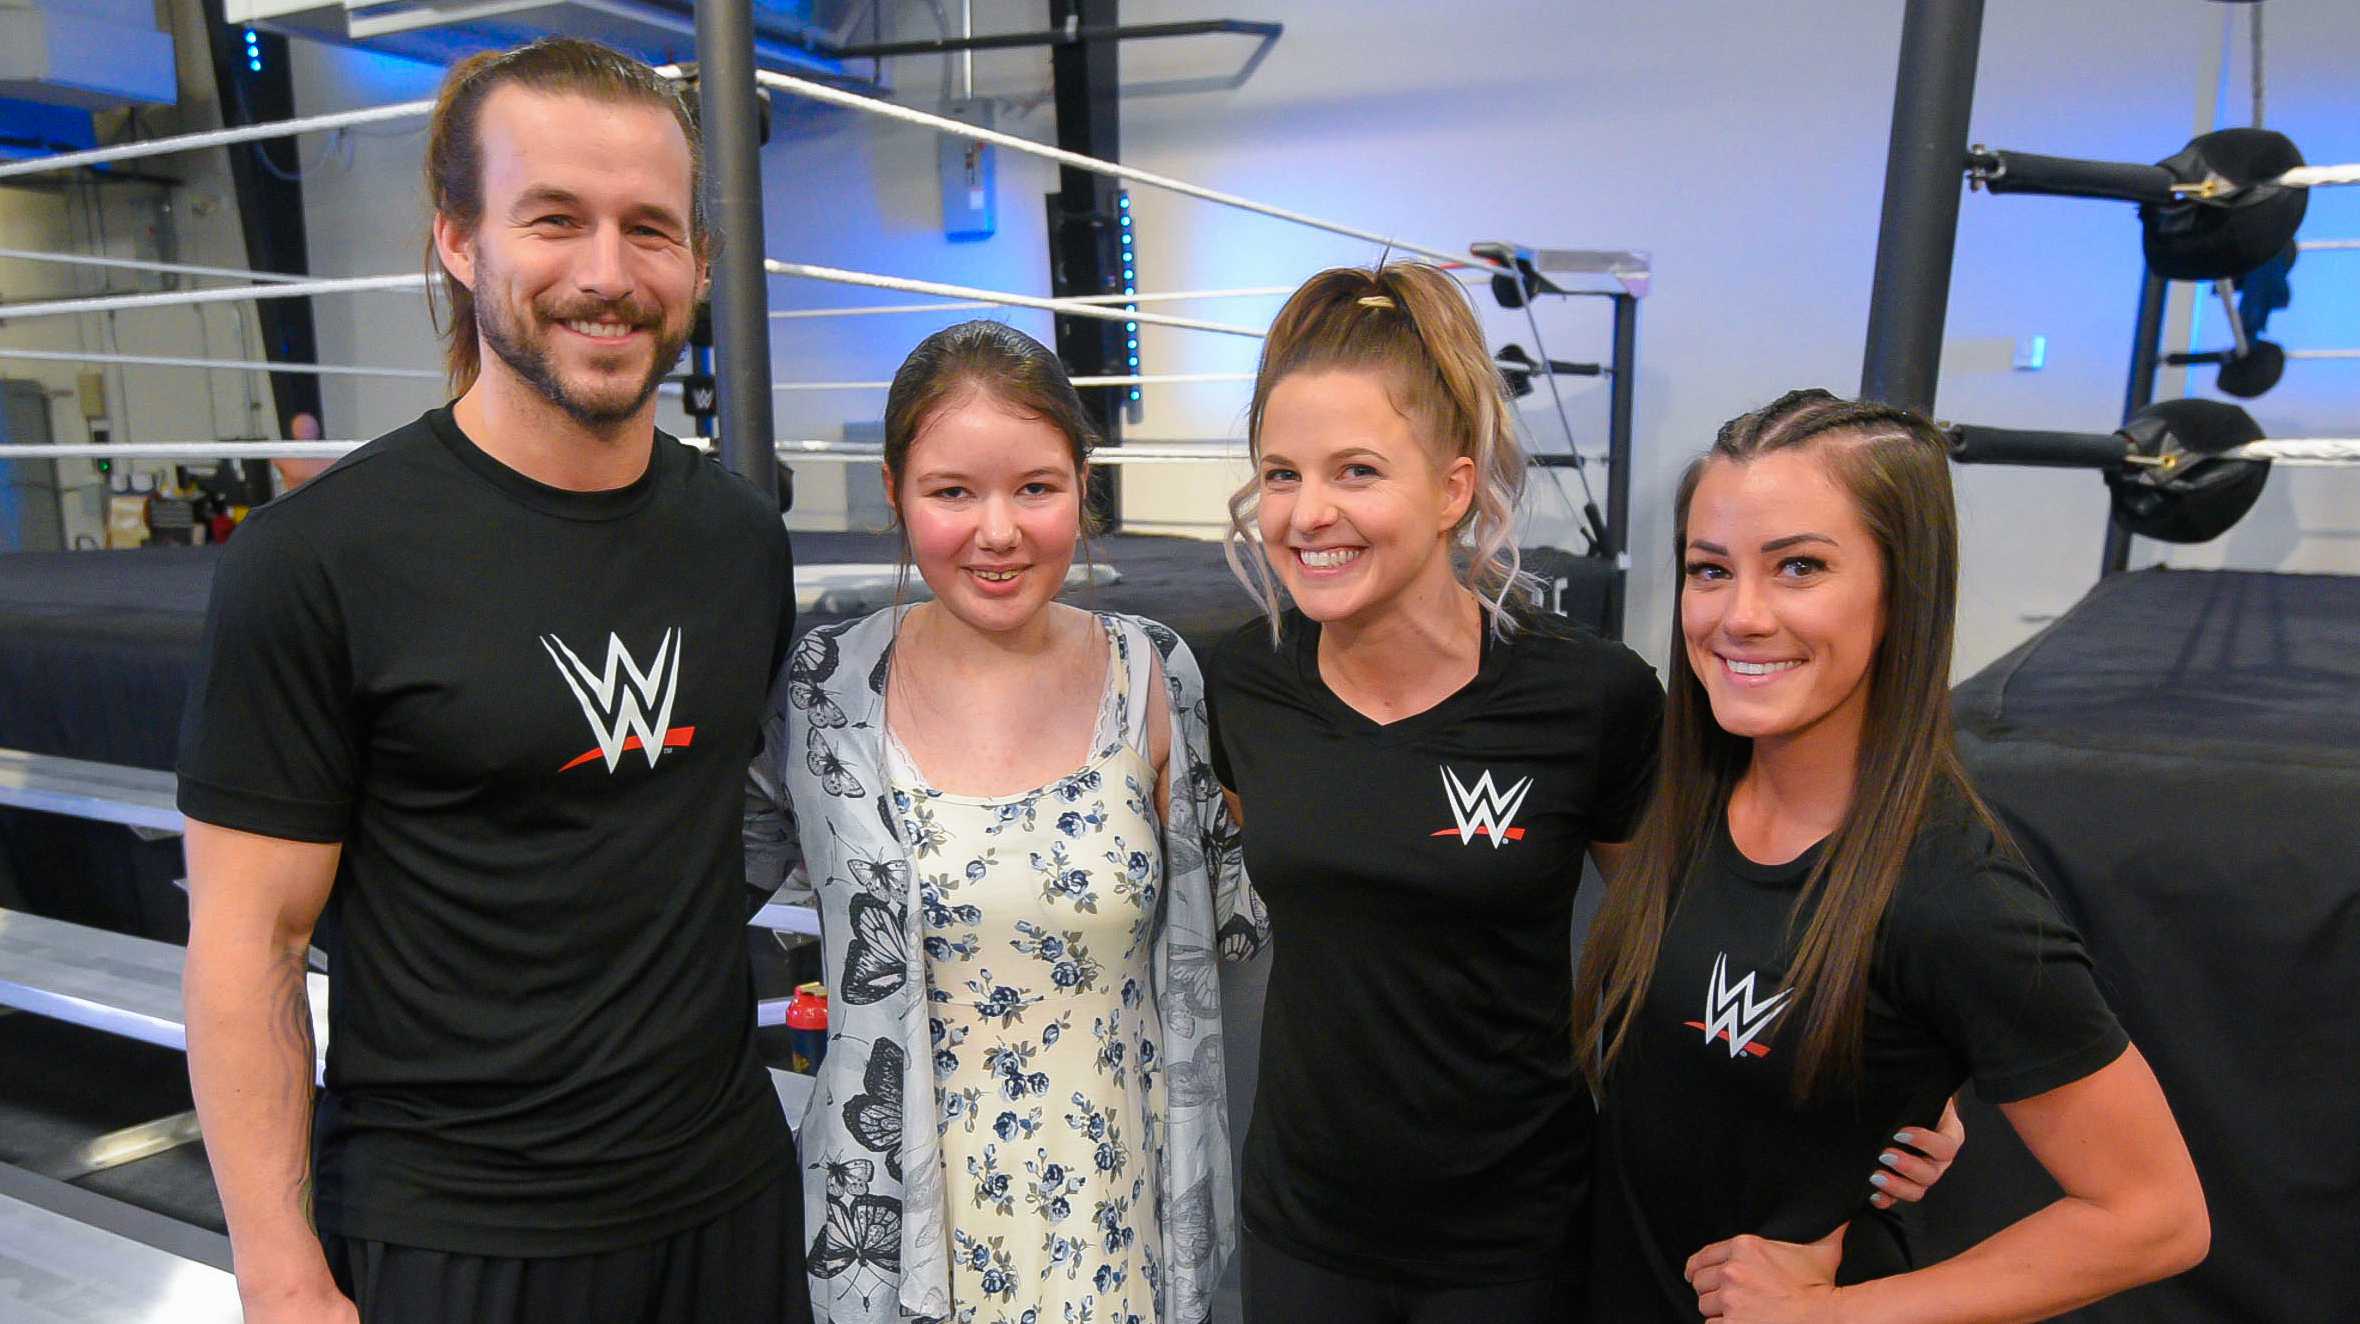 Rhianna with WWE team